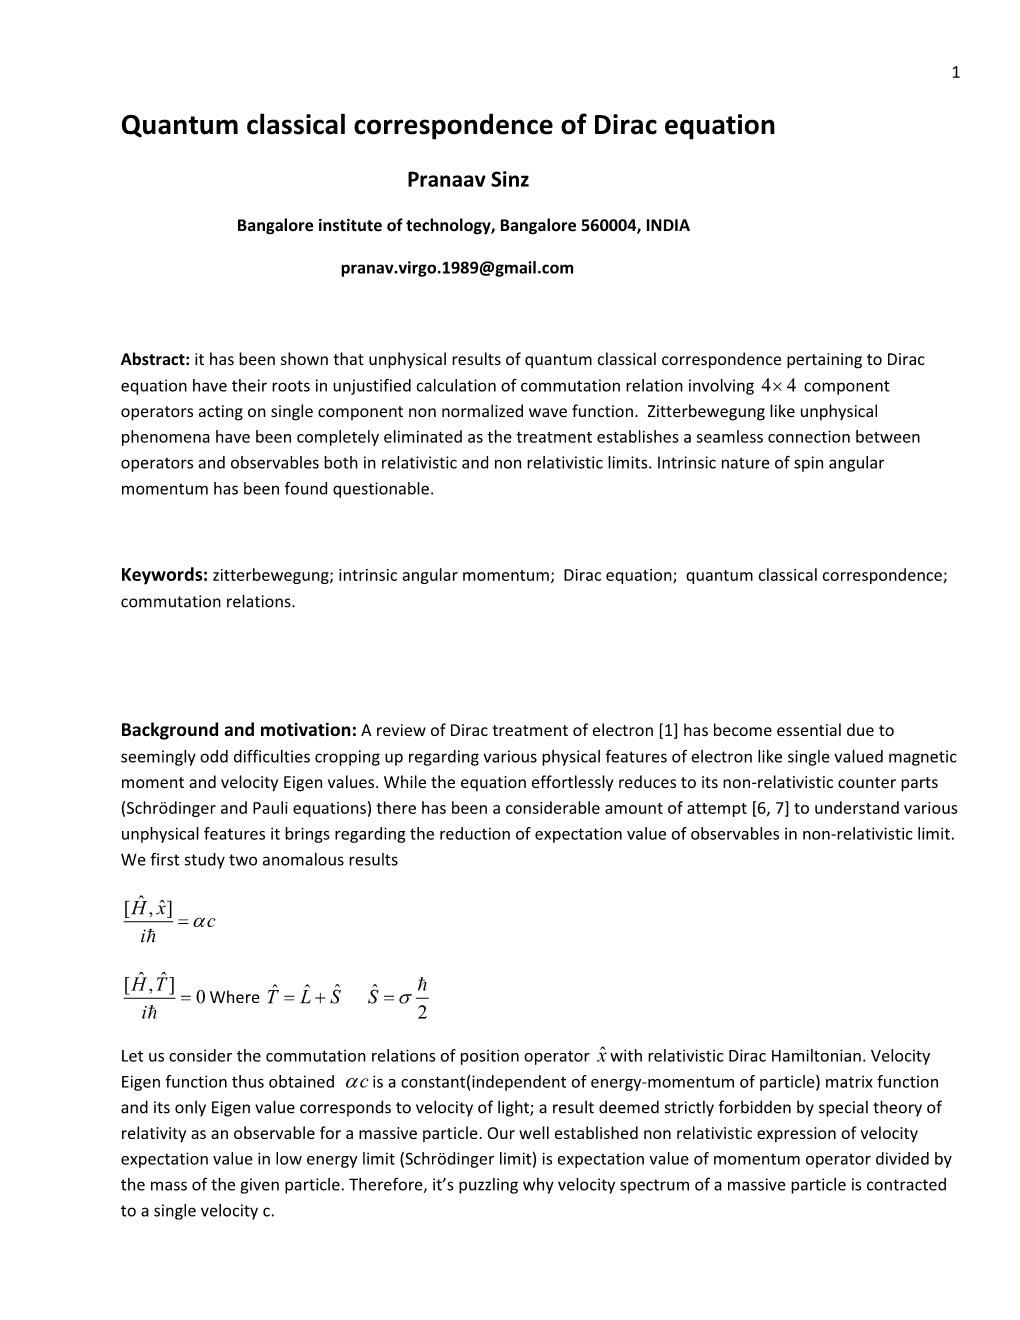 Quantum Classical Correspondence of Dirac Equation